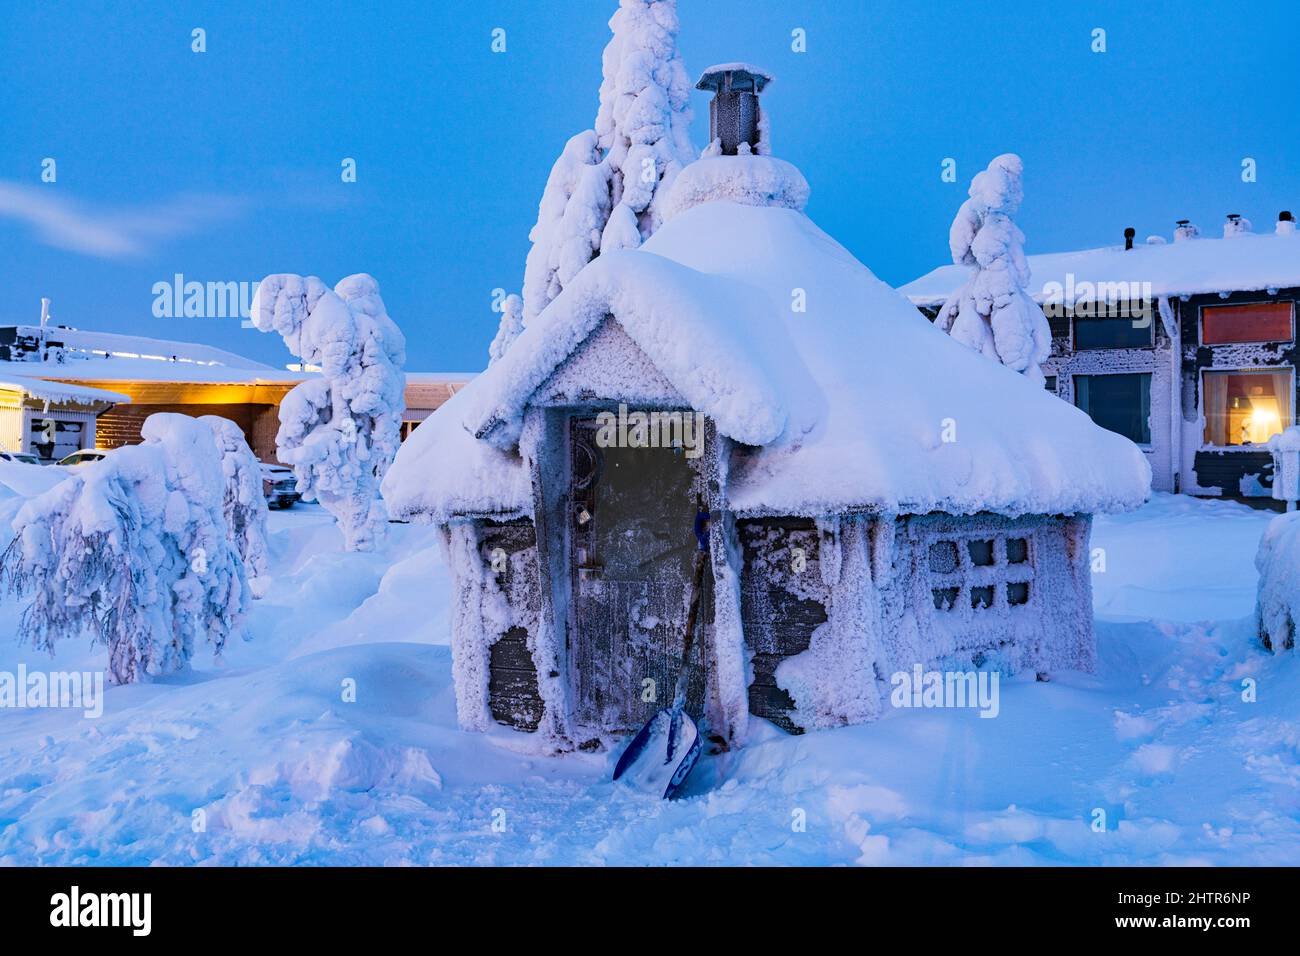 Gefrorene Blockhütte mit Schnee bedeckt in der Dämmerung während des kalten arktischen Winters, ISO-Syote, Lappland, Finnland Stockfoto